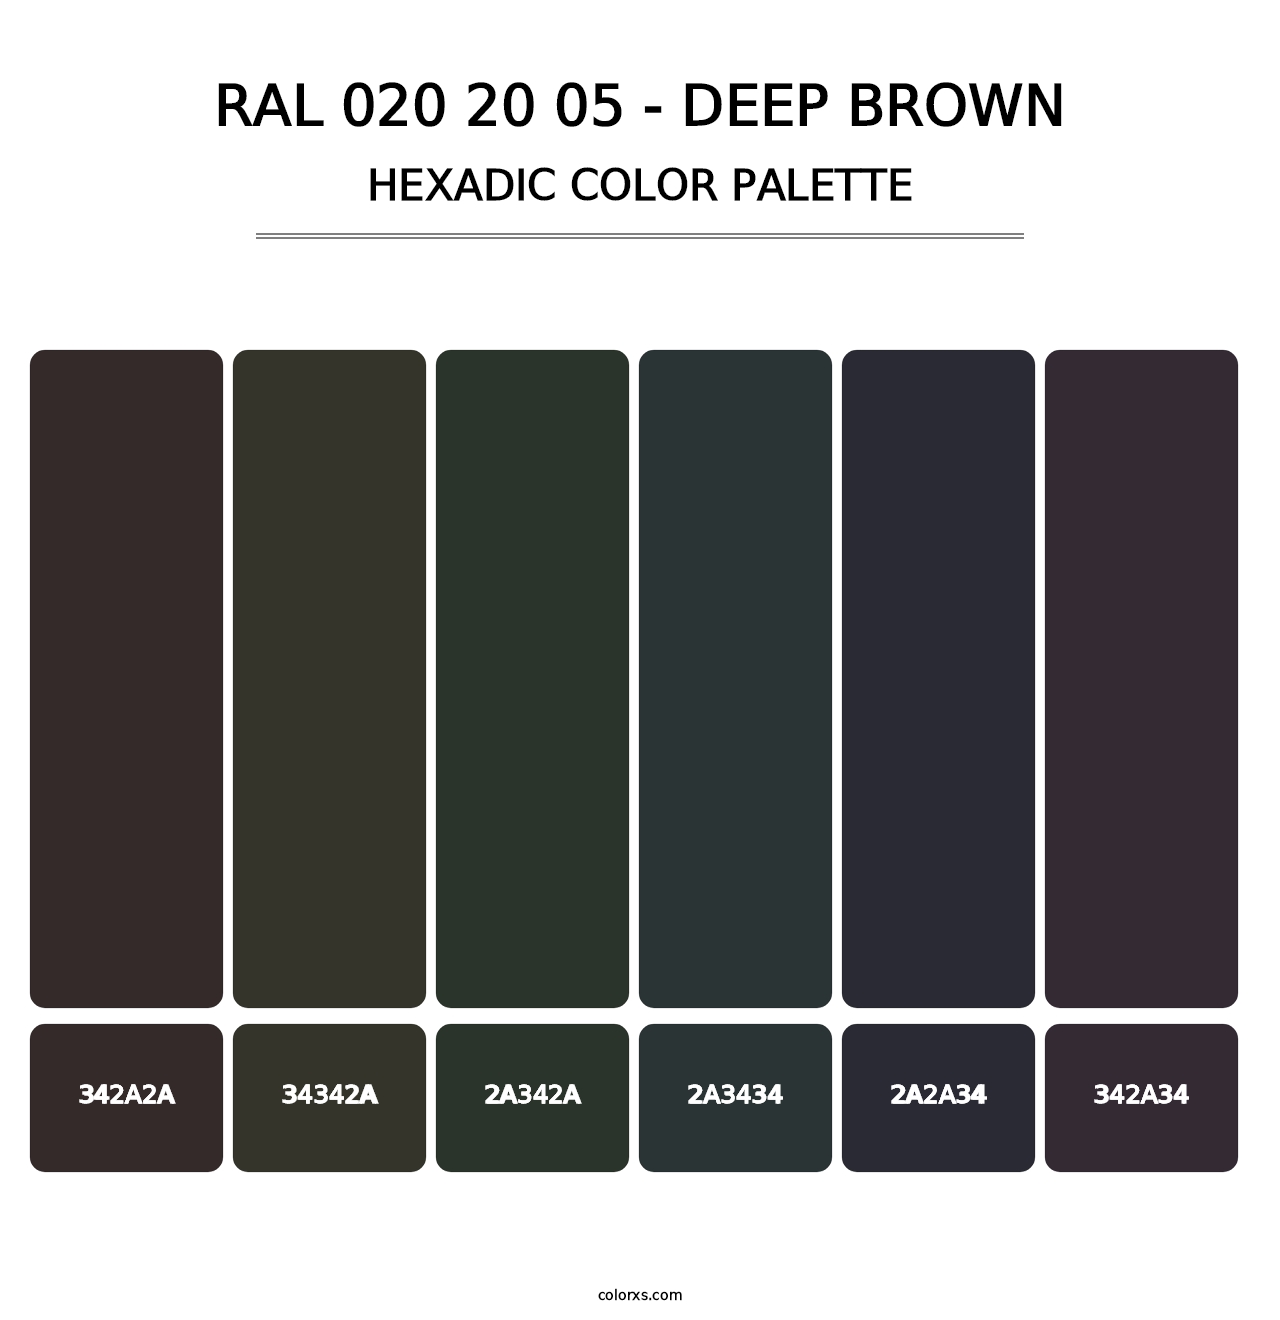 RAL 020 20 05 - Deep Brown - Hexadic Color Palette